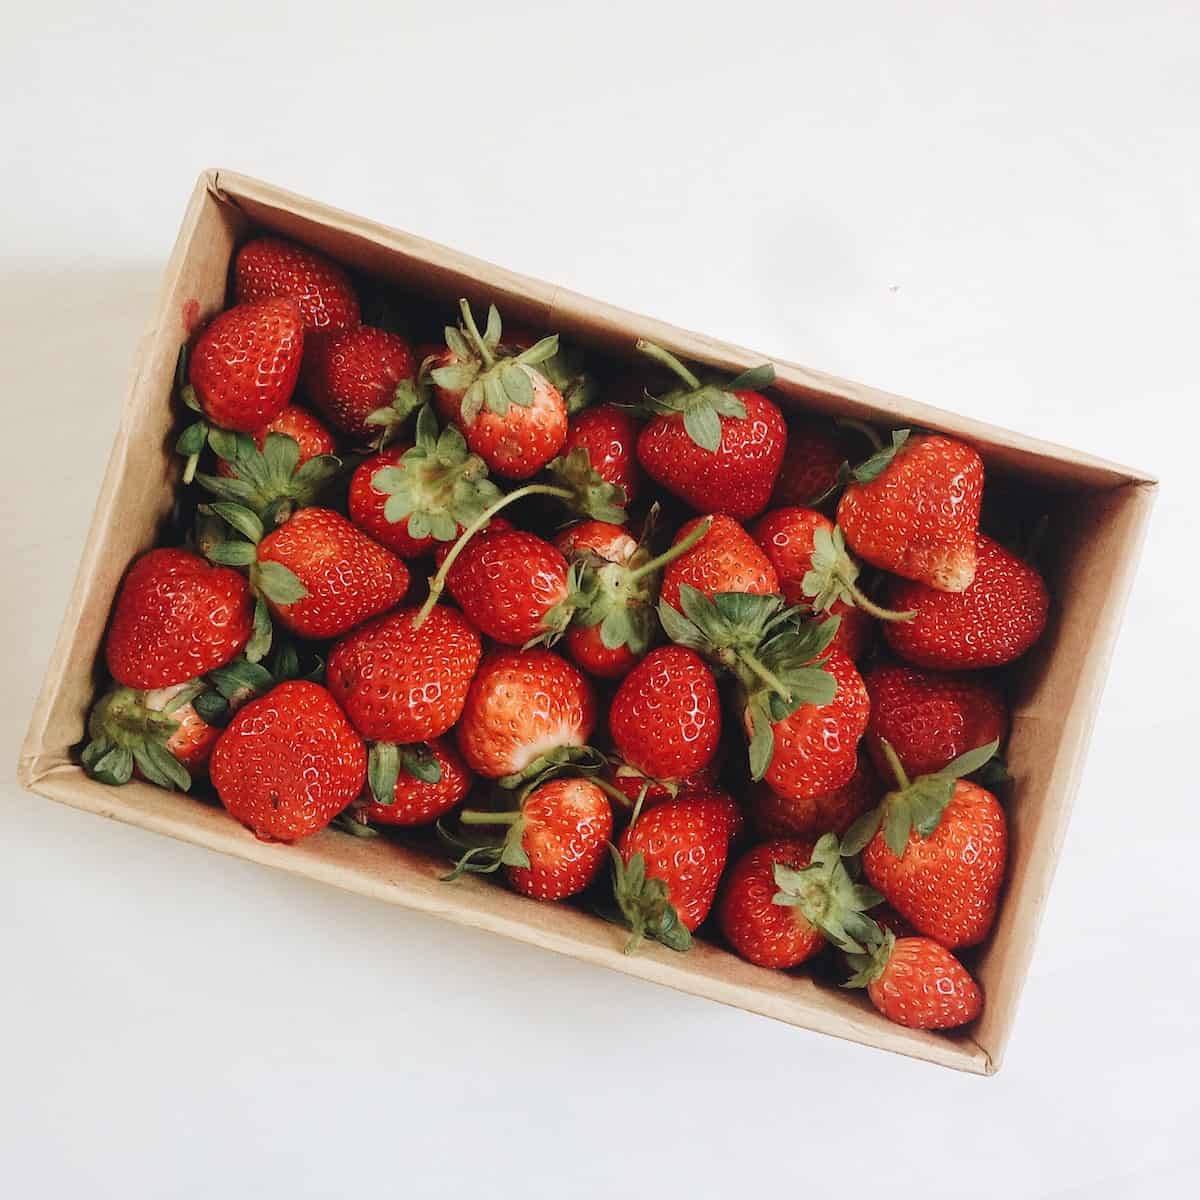 strawberries in white rectangular box